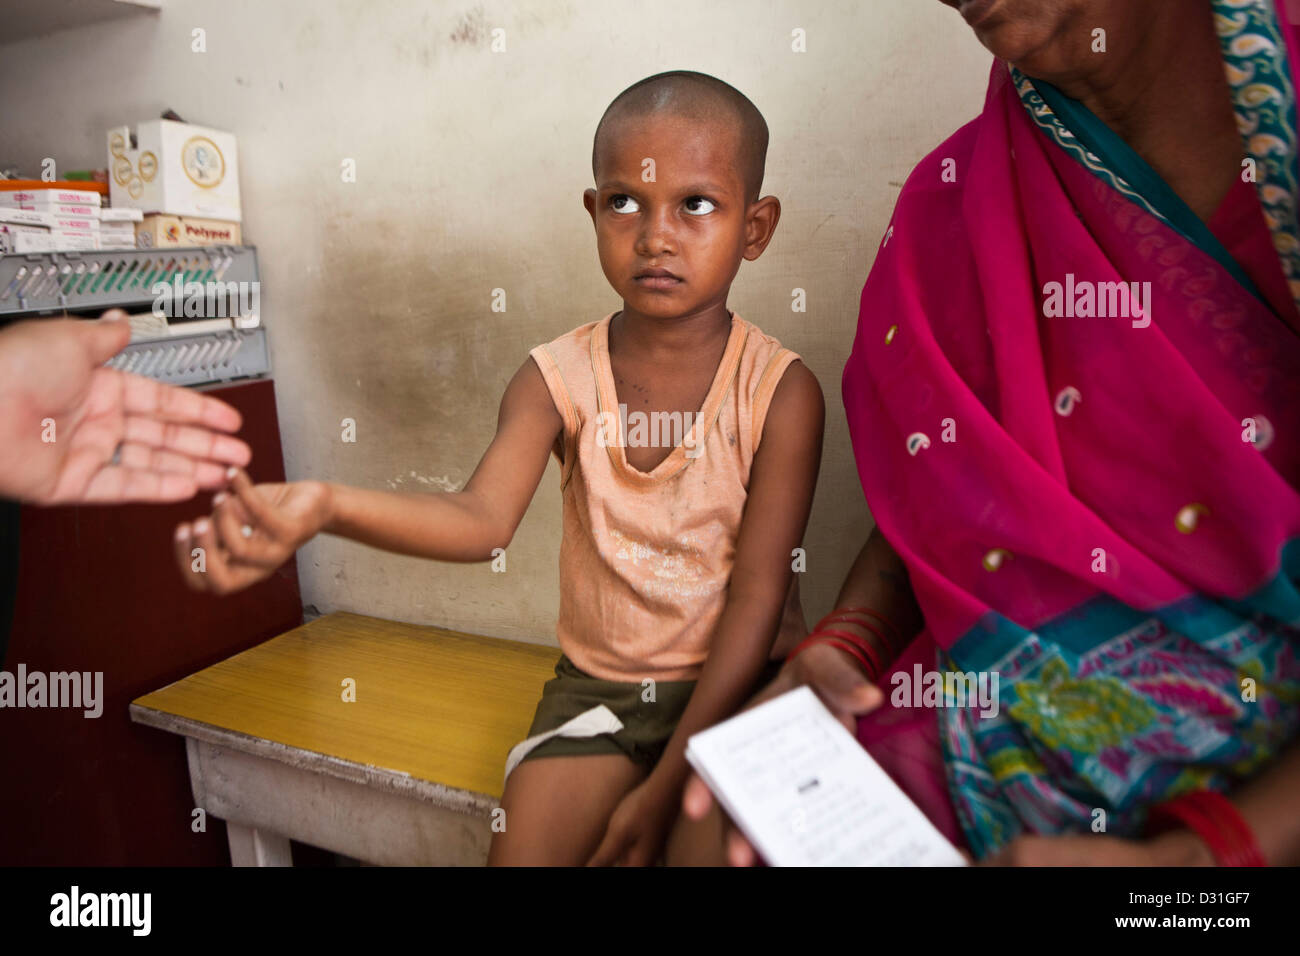 Indisches Kind erhält ihre täglichen Medikamente Tabletten für Tuberkulose (TB), die sind verzichtet wird. Delhi, Indien Stockfoto